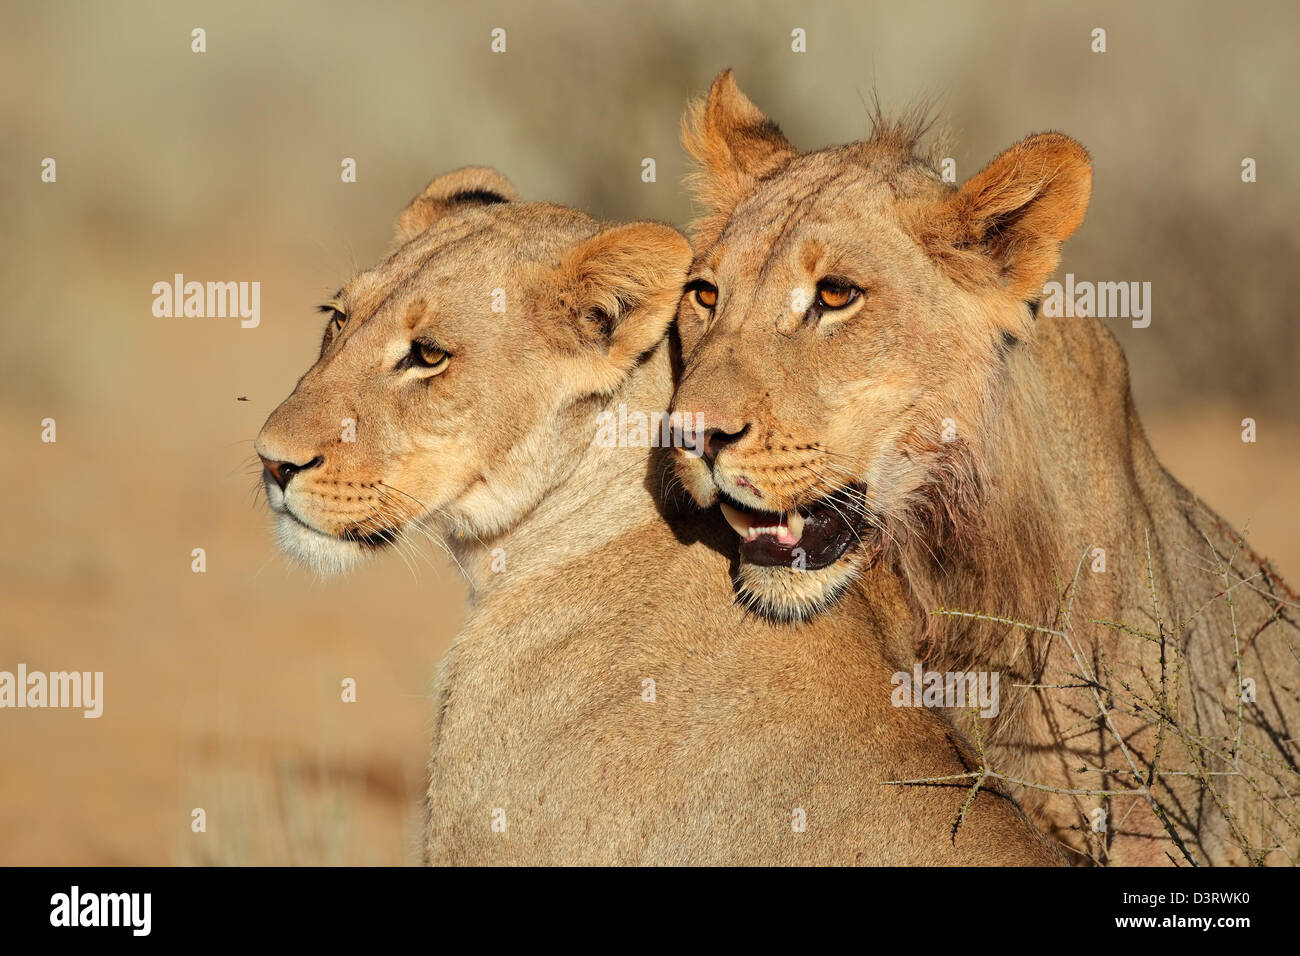 Porträts von zwei Löwen (Panthera Leo) in liebevoller Interaktion, Kalahari-Wüste, Südafrika Stockfoto